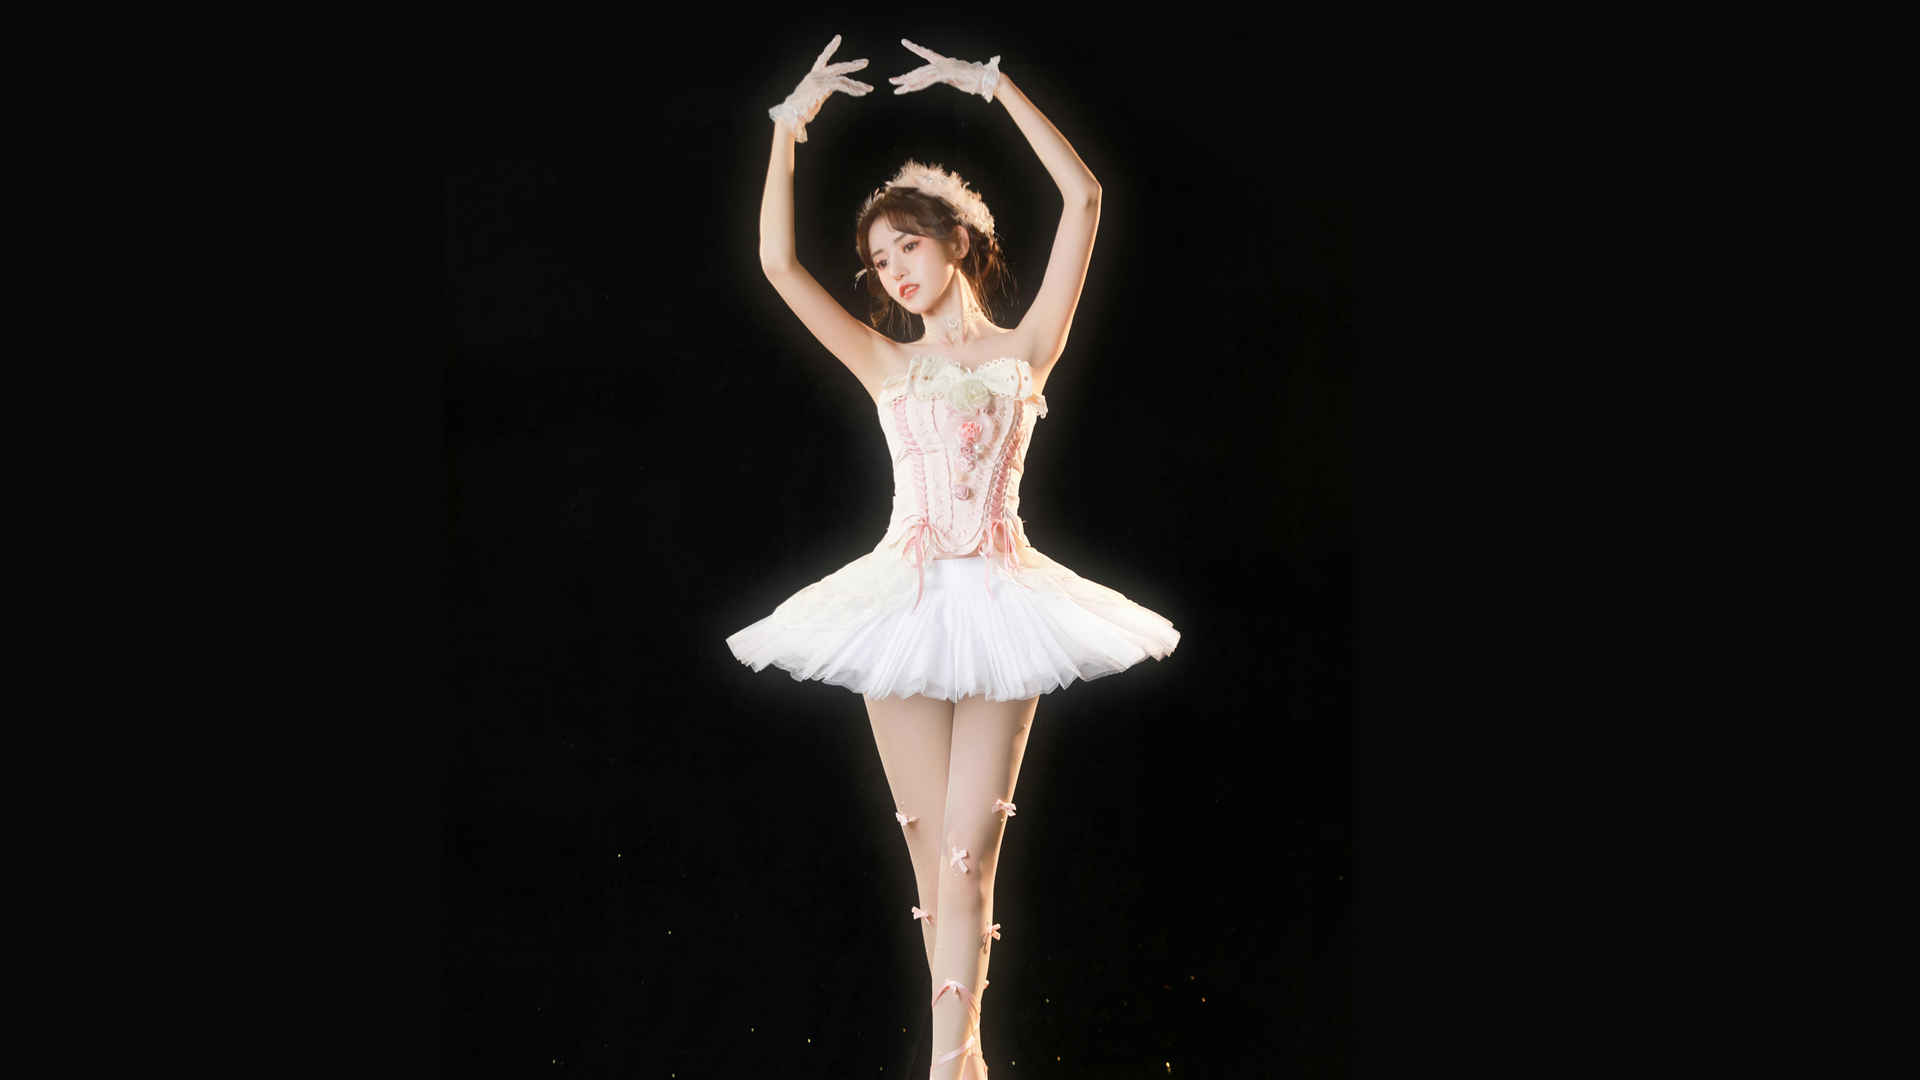 好看身材芭蕾舞美女4k壁纸-